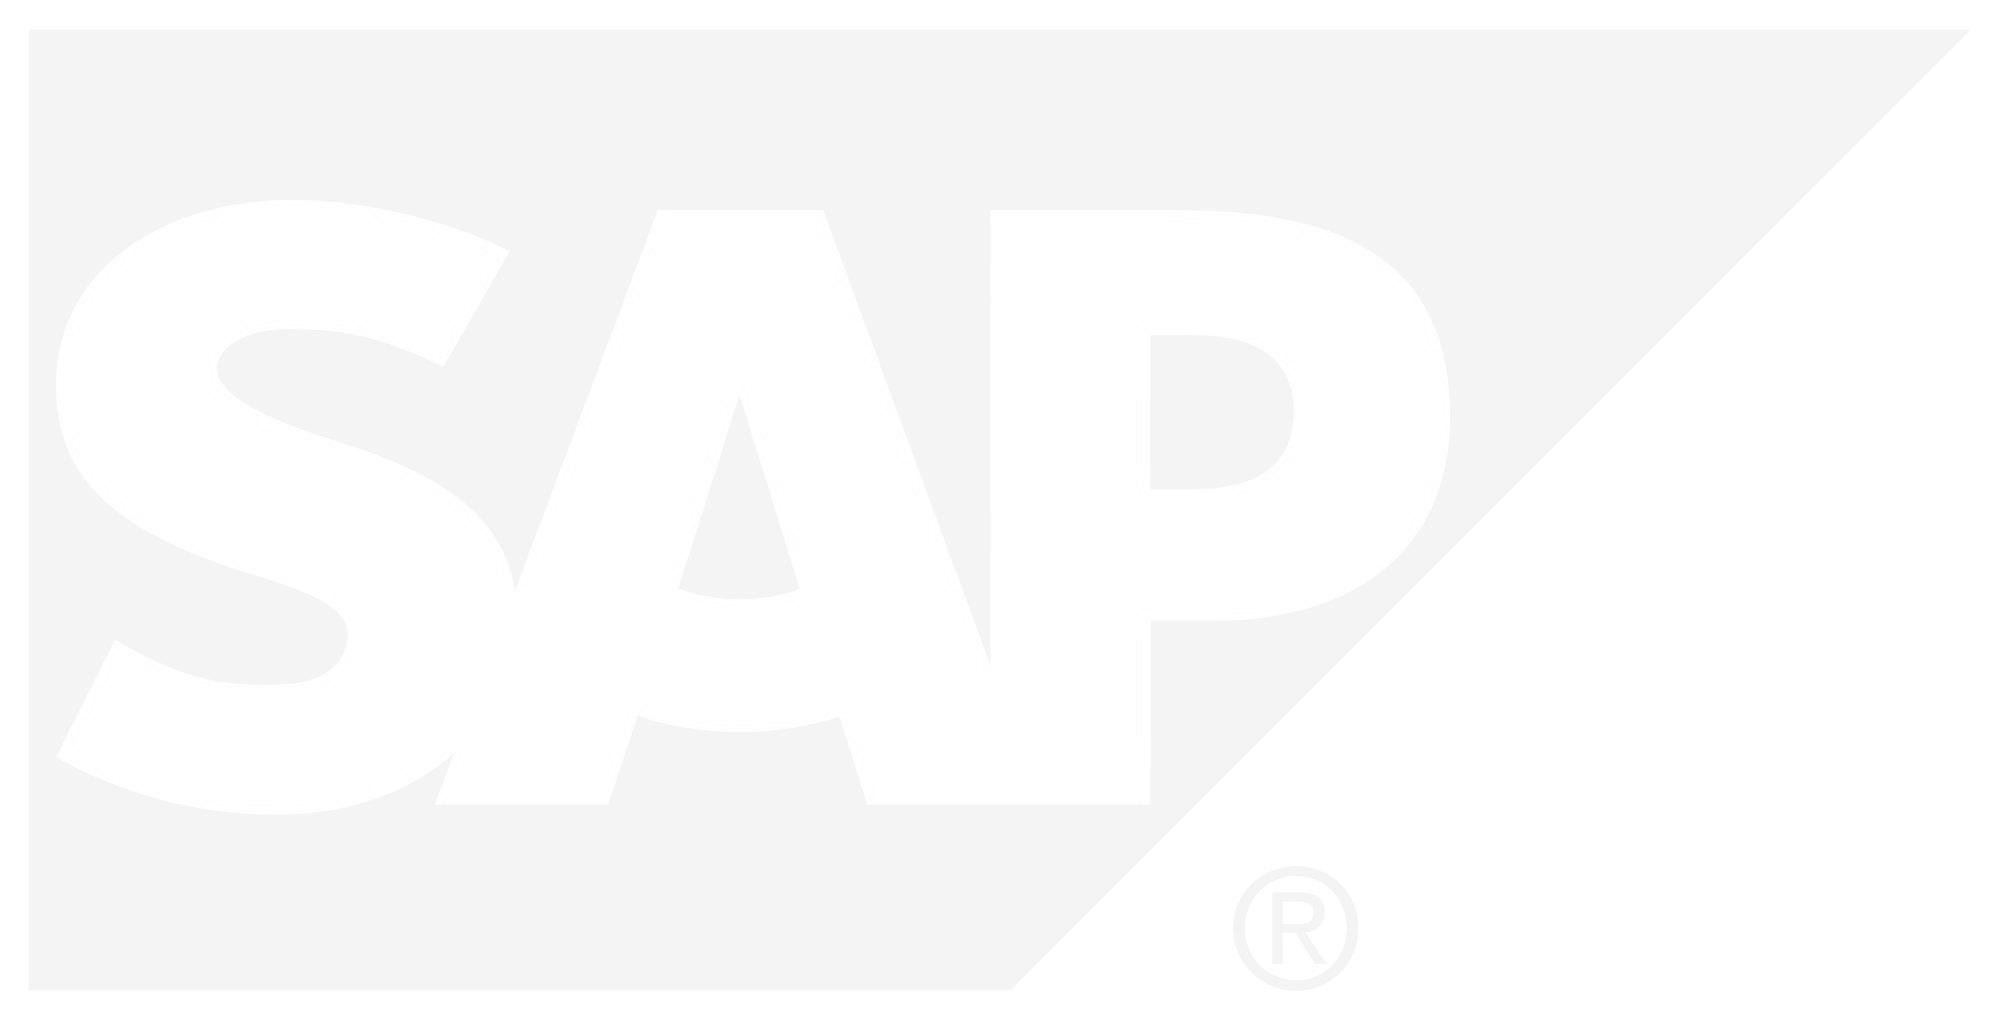 SAP-greywhite.png